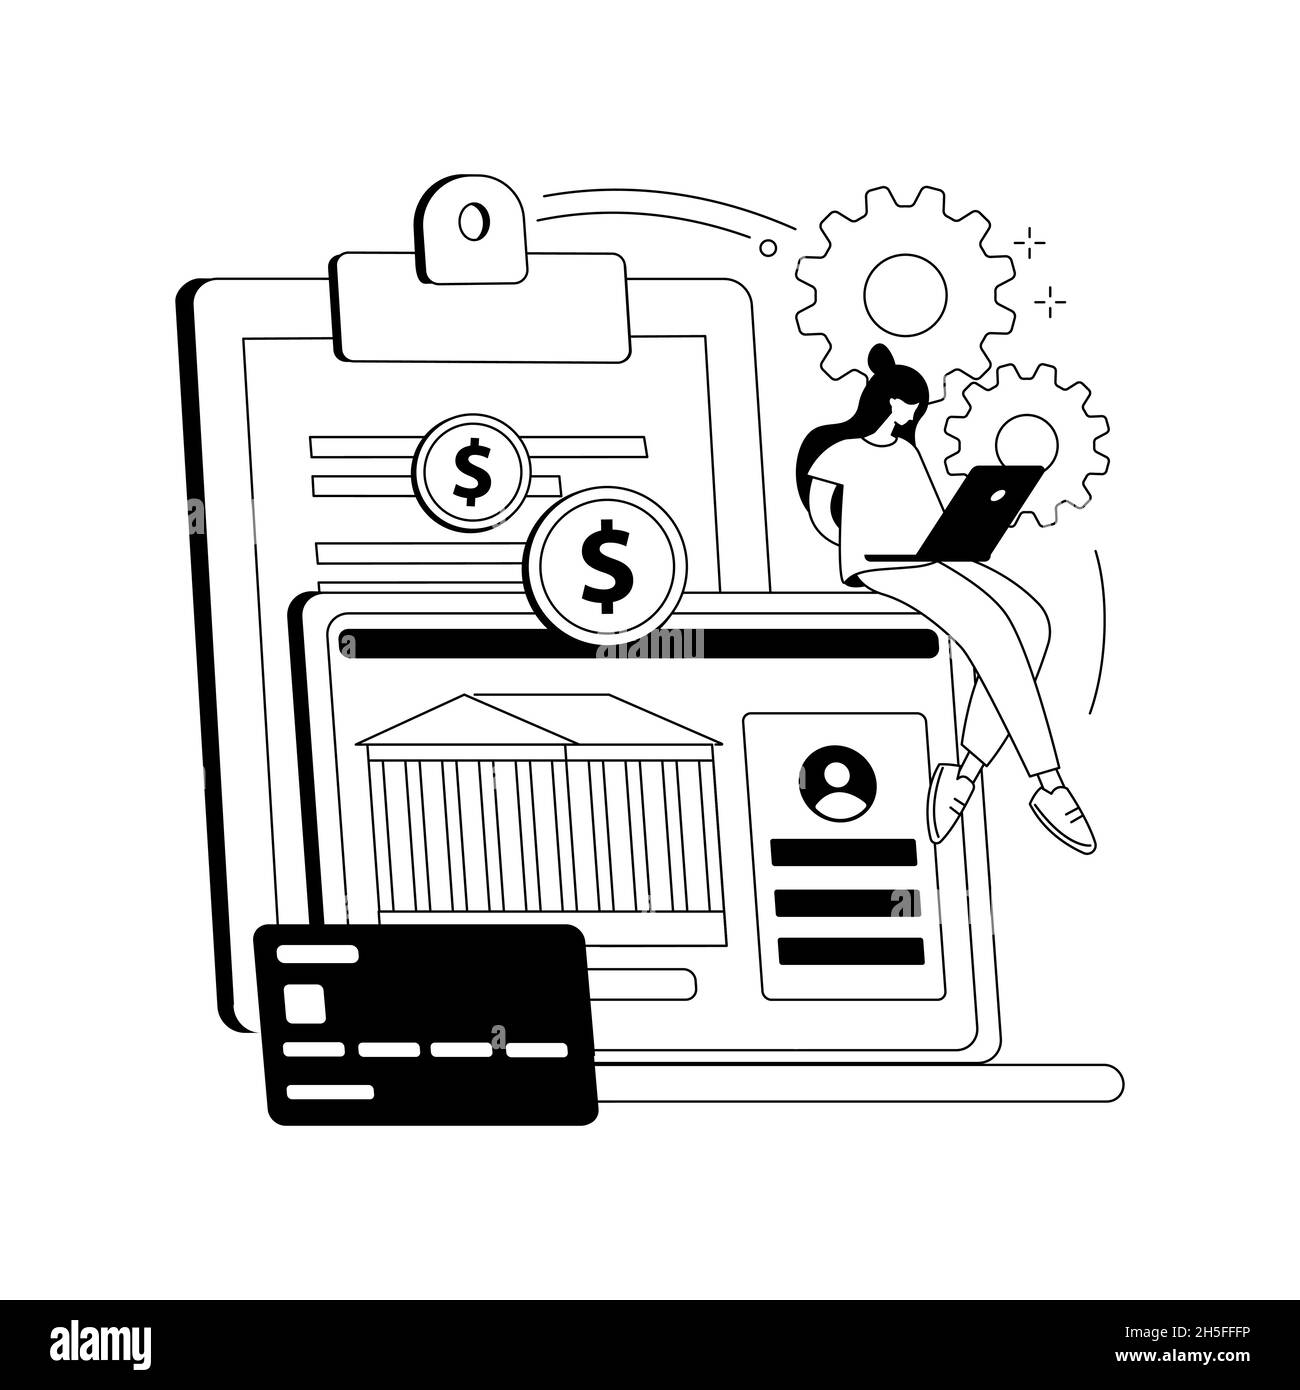 Illustrazione vettoriale del concetto astratto del conto bancario. Illustrazione Vettoriale